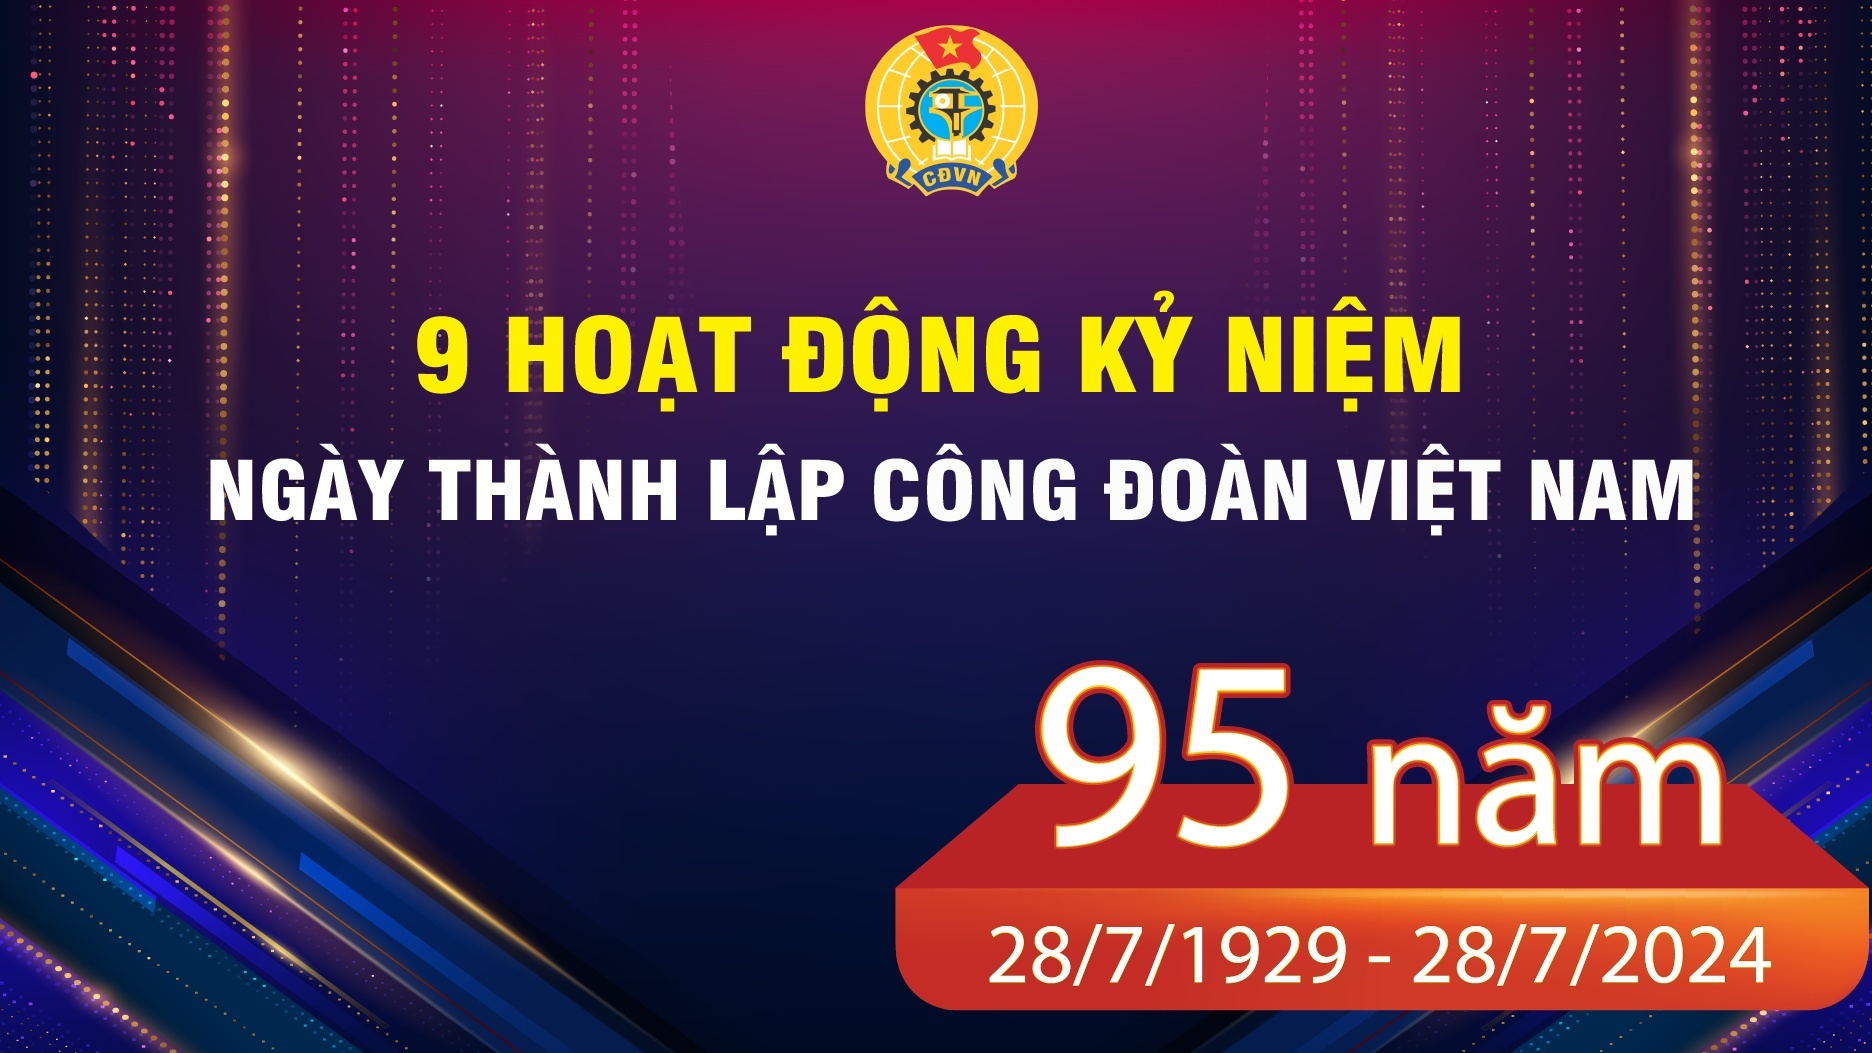 Các hoạt động kỷ niệm 95 năm Công đoàn Việt Nam